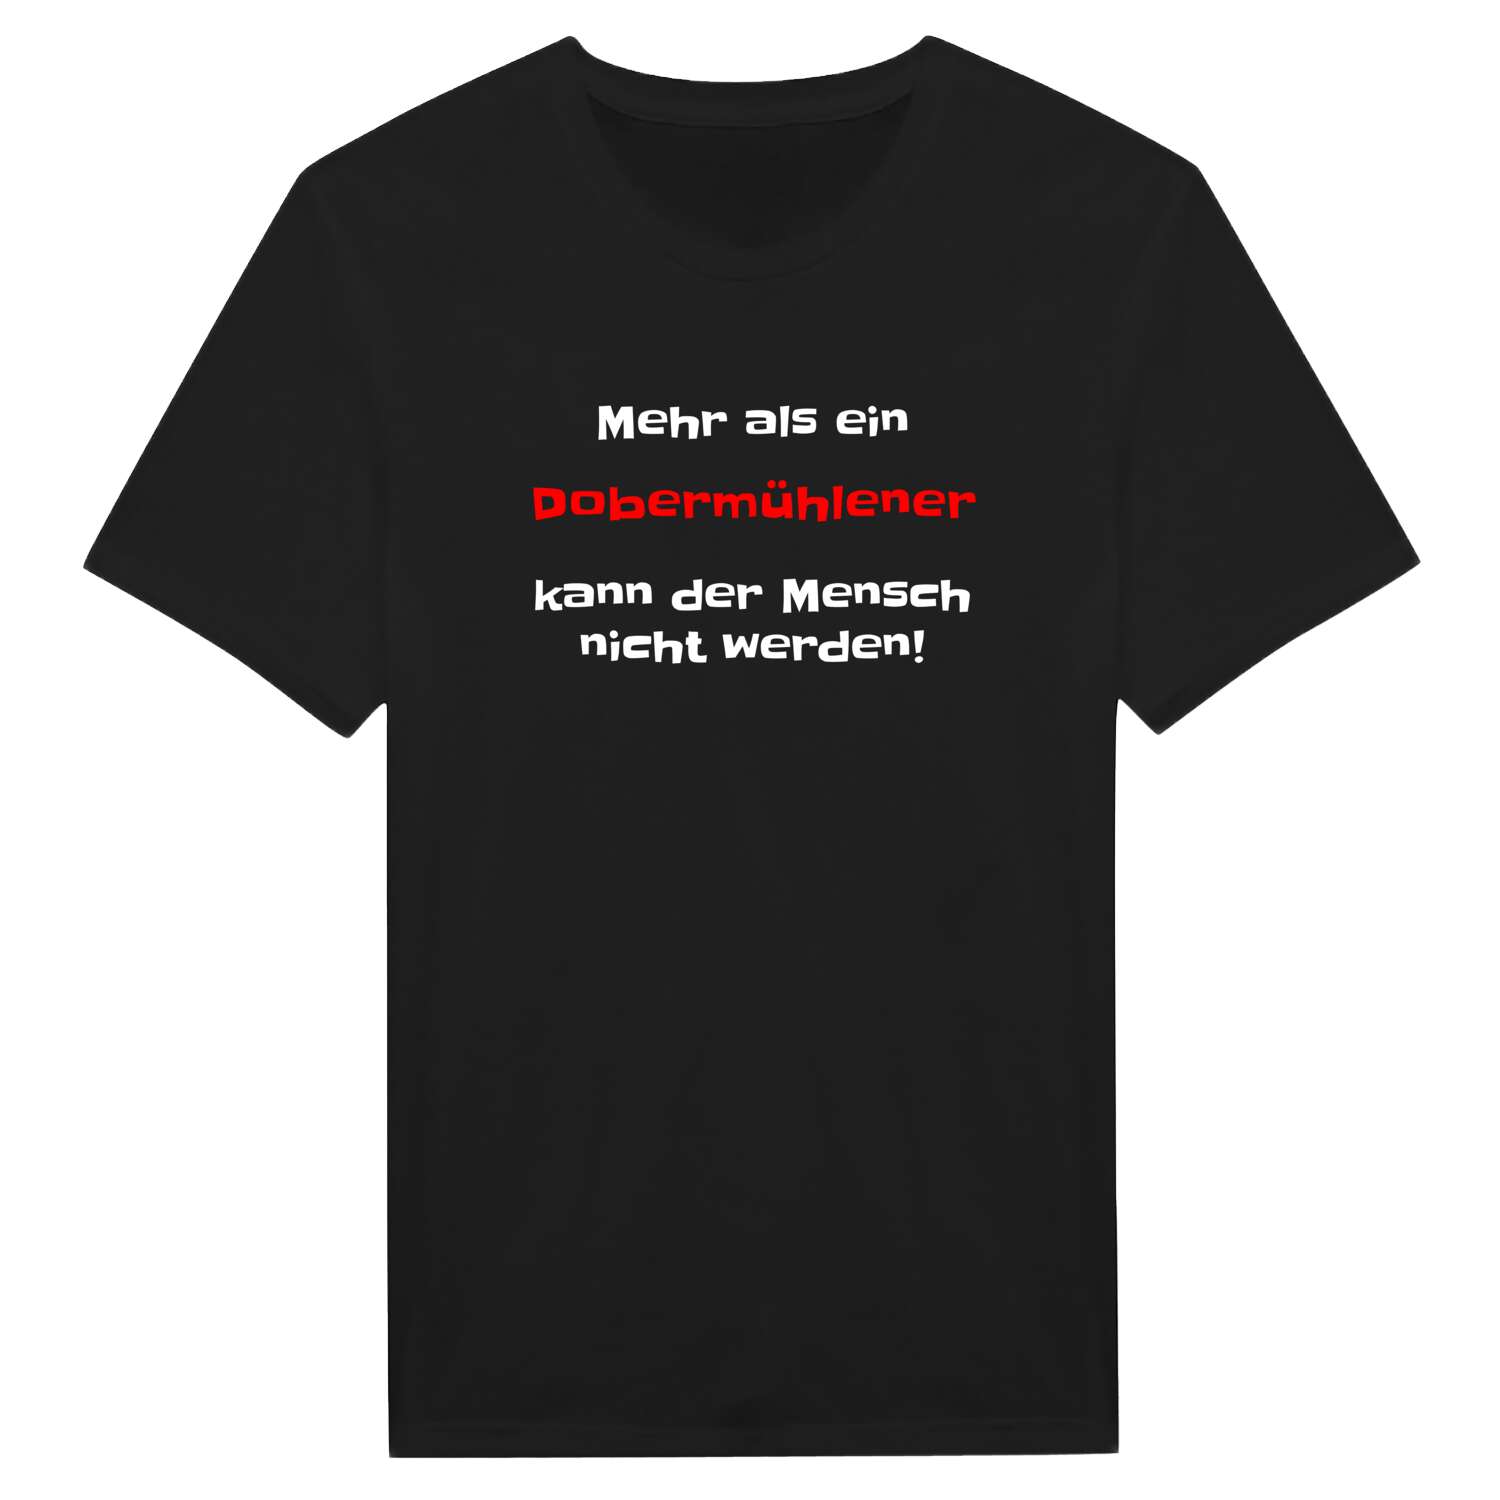 Dobermühle T-Shirt »Mehr als ein«